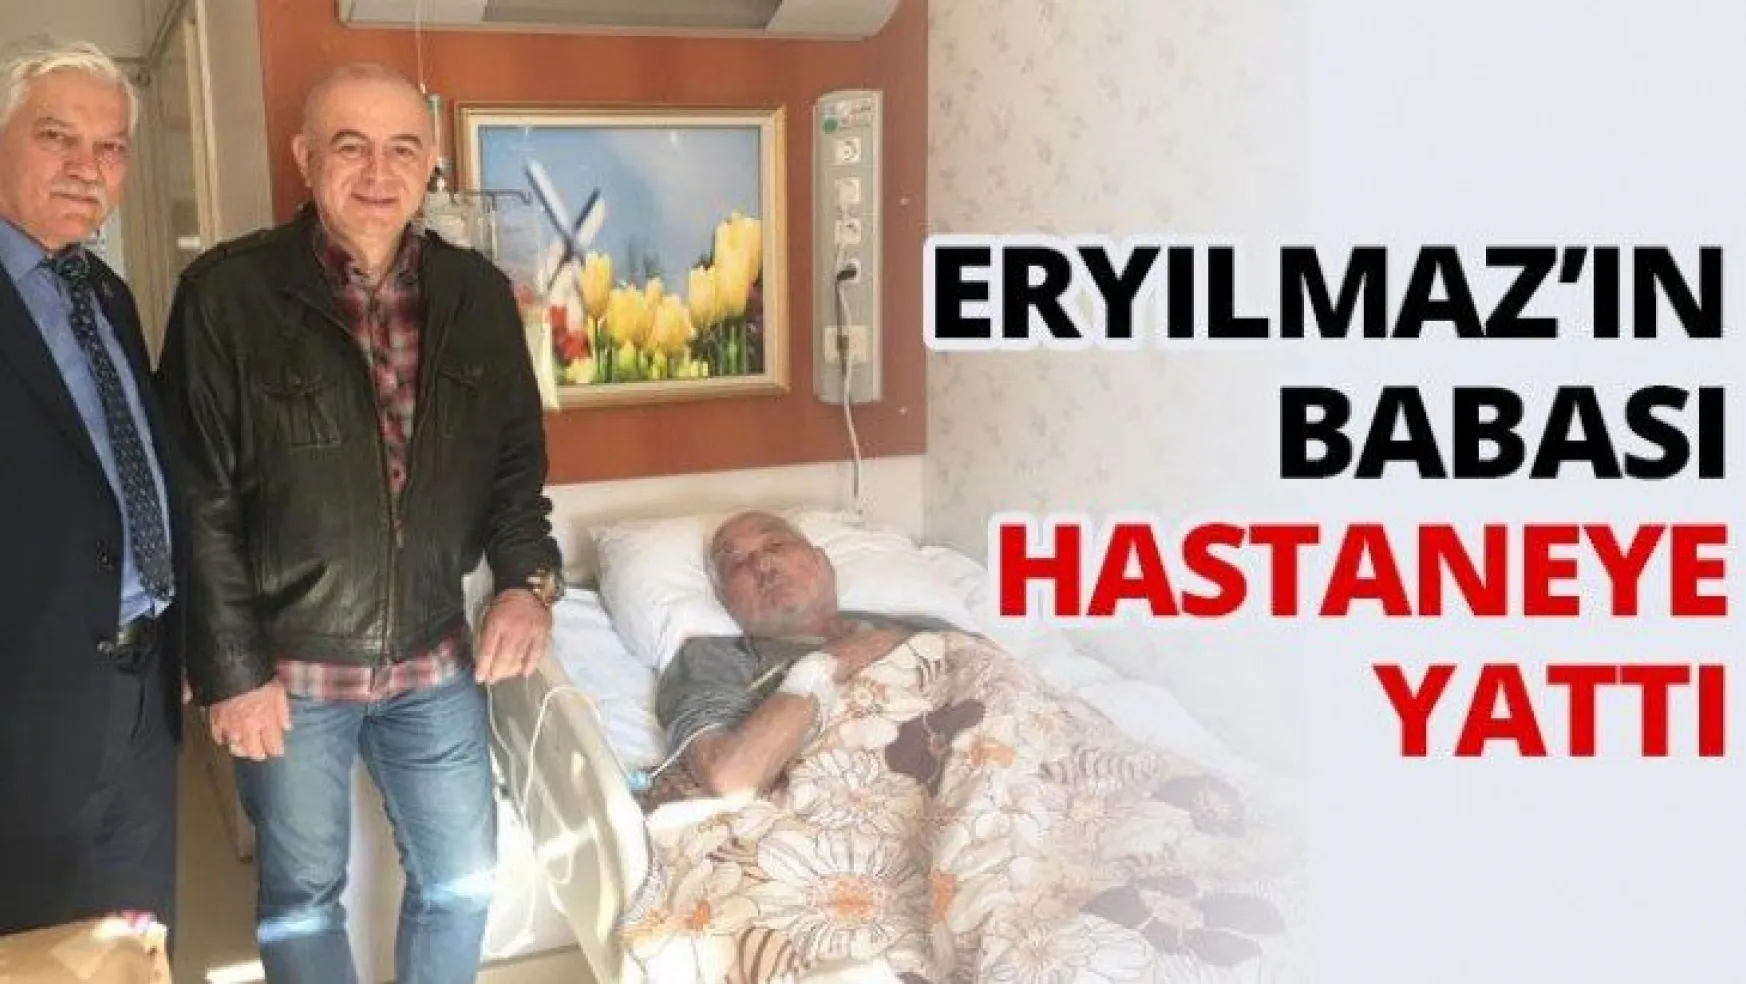 Eryılmaz'ın babası hastaneye yattı